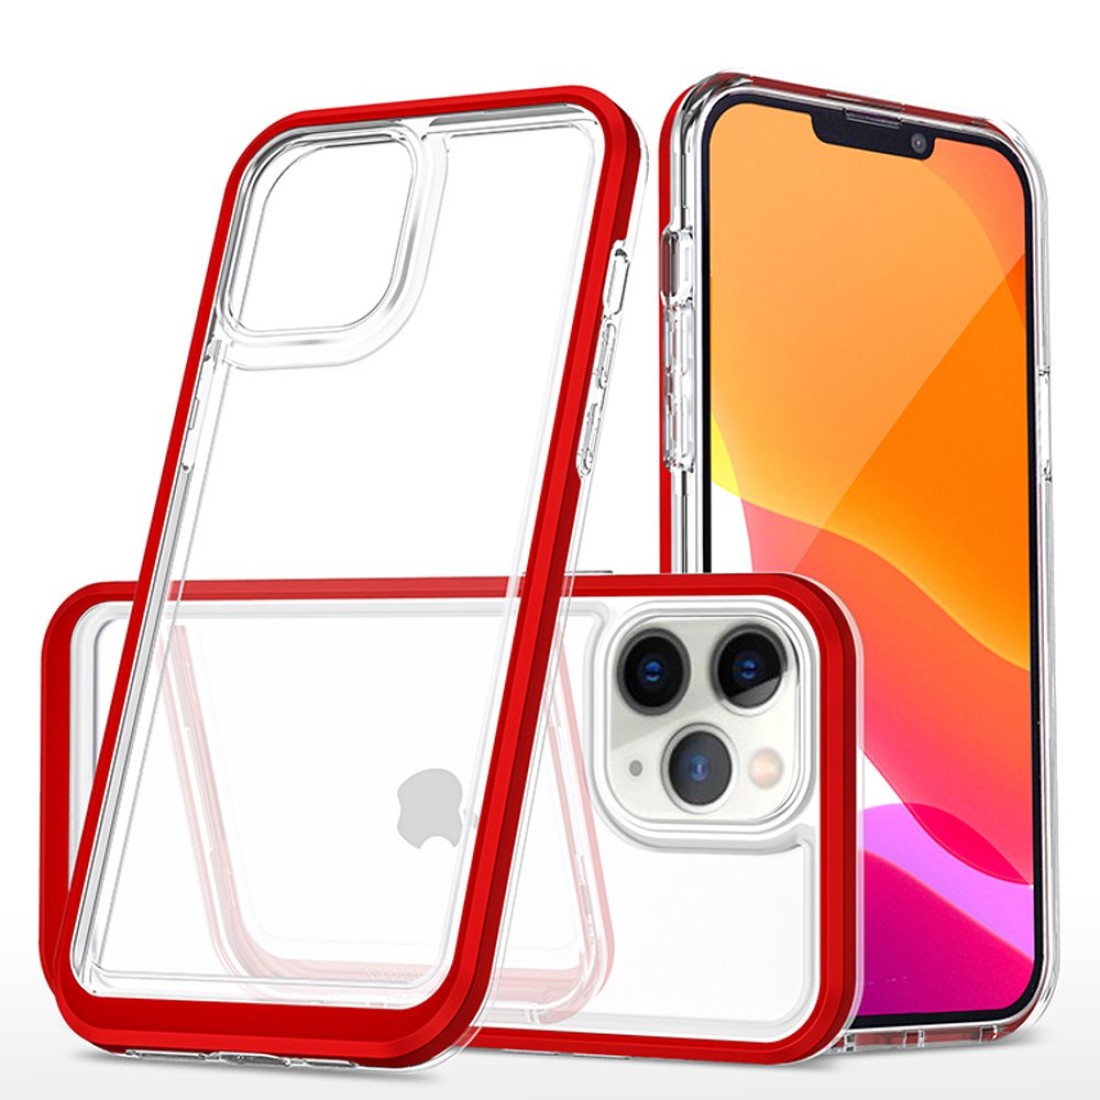 Apple iPhone 11 Pro Kılıf Lims Silikon - Kırmızı